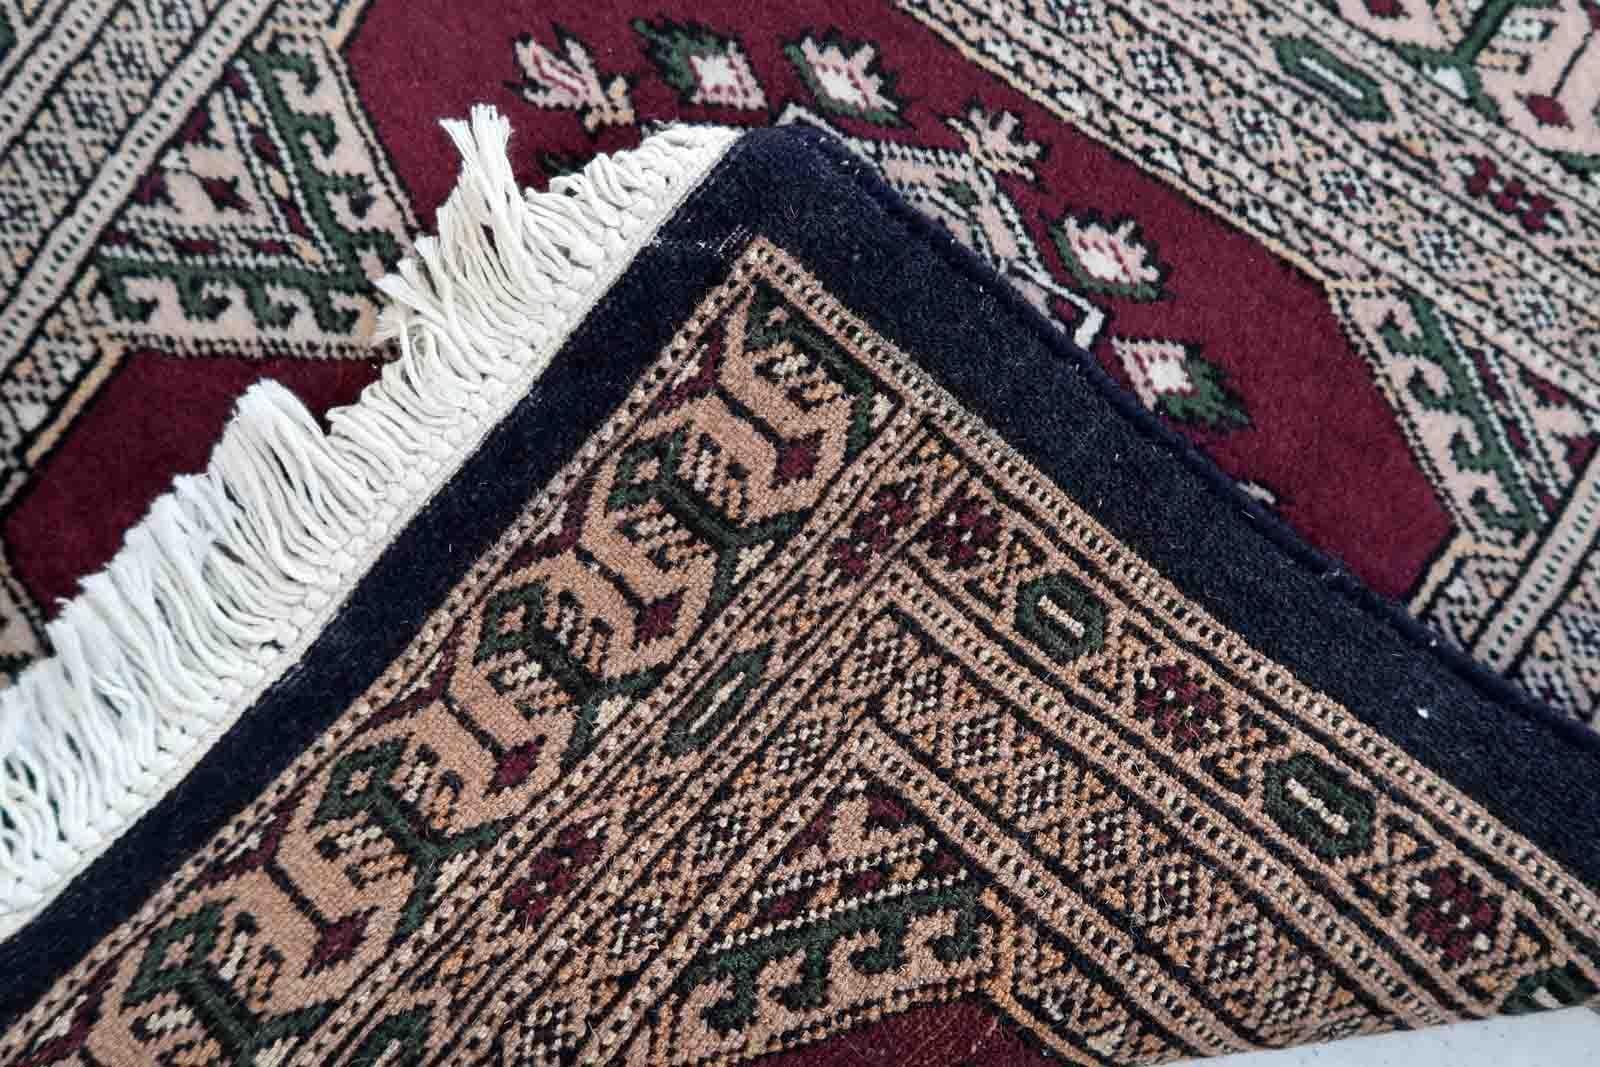 Handgefertigte usbekische Buchara-Matte in gutem Originalzustand. Der Teppich wurde Ende des 20. Jahrhunderts aus Wolle hergestellt.

-zustand: original gut,

-etwa: 1970er Jahre,

-größe: 1,8' x 2,1' (55cm x 65cm),

-material: